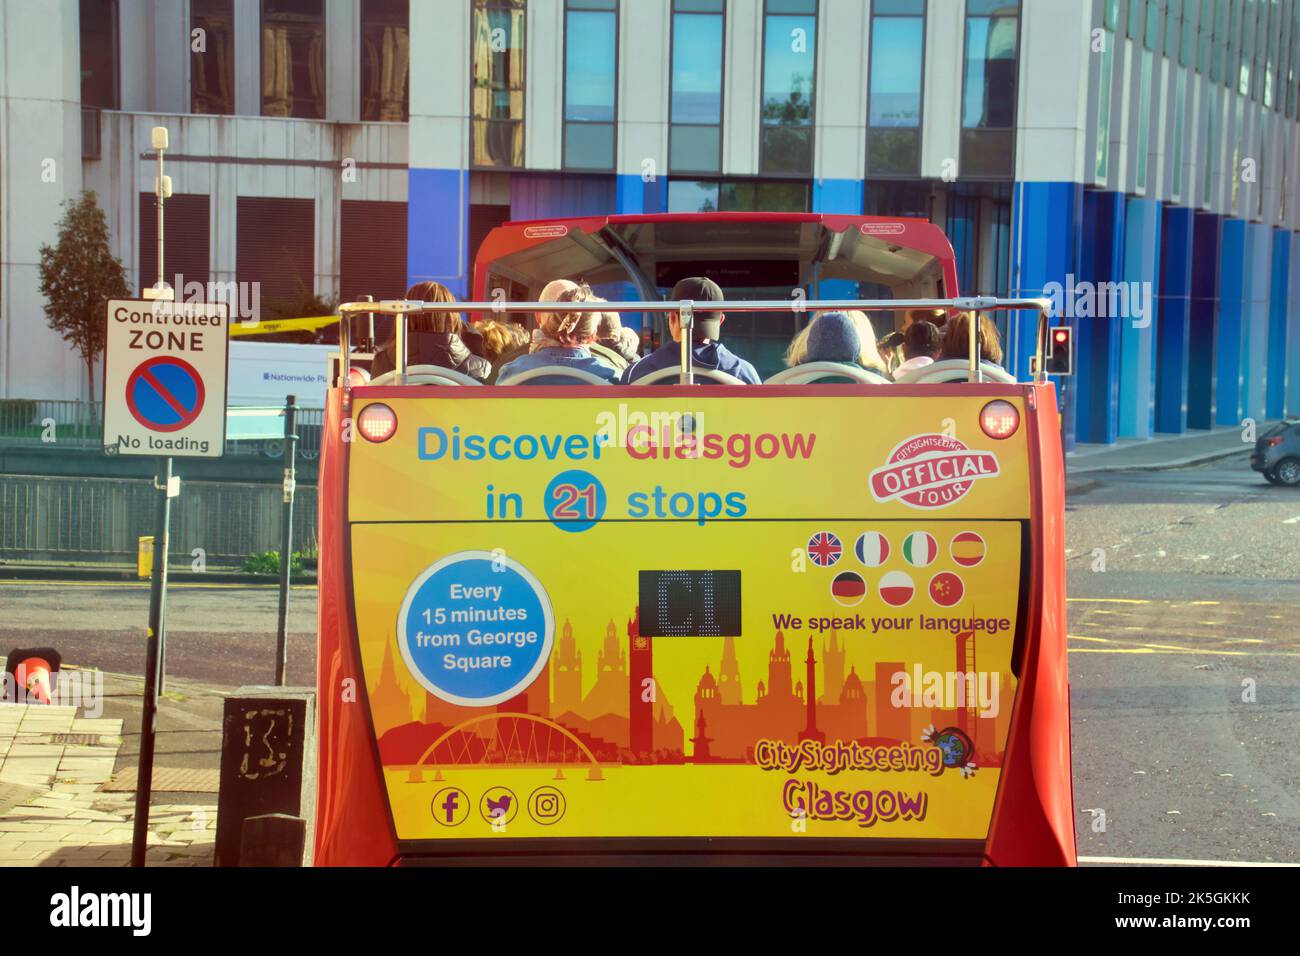 City Sightseeing Glasgow tourist bus Stock Photo